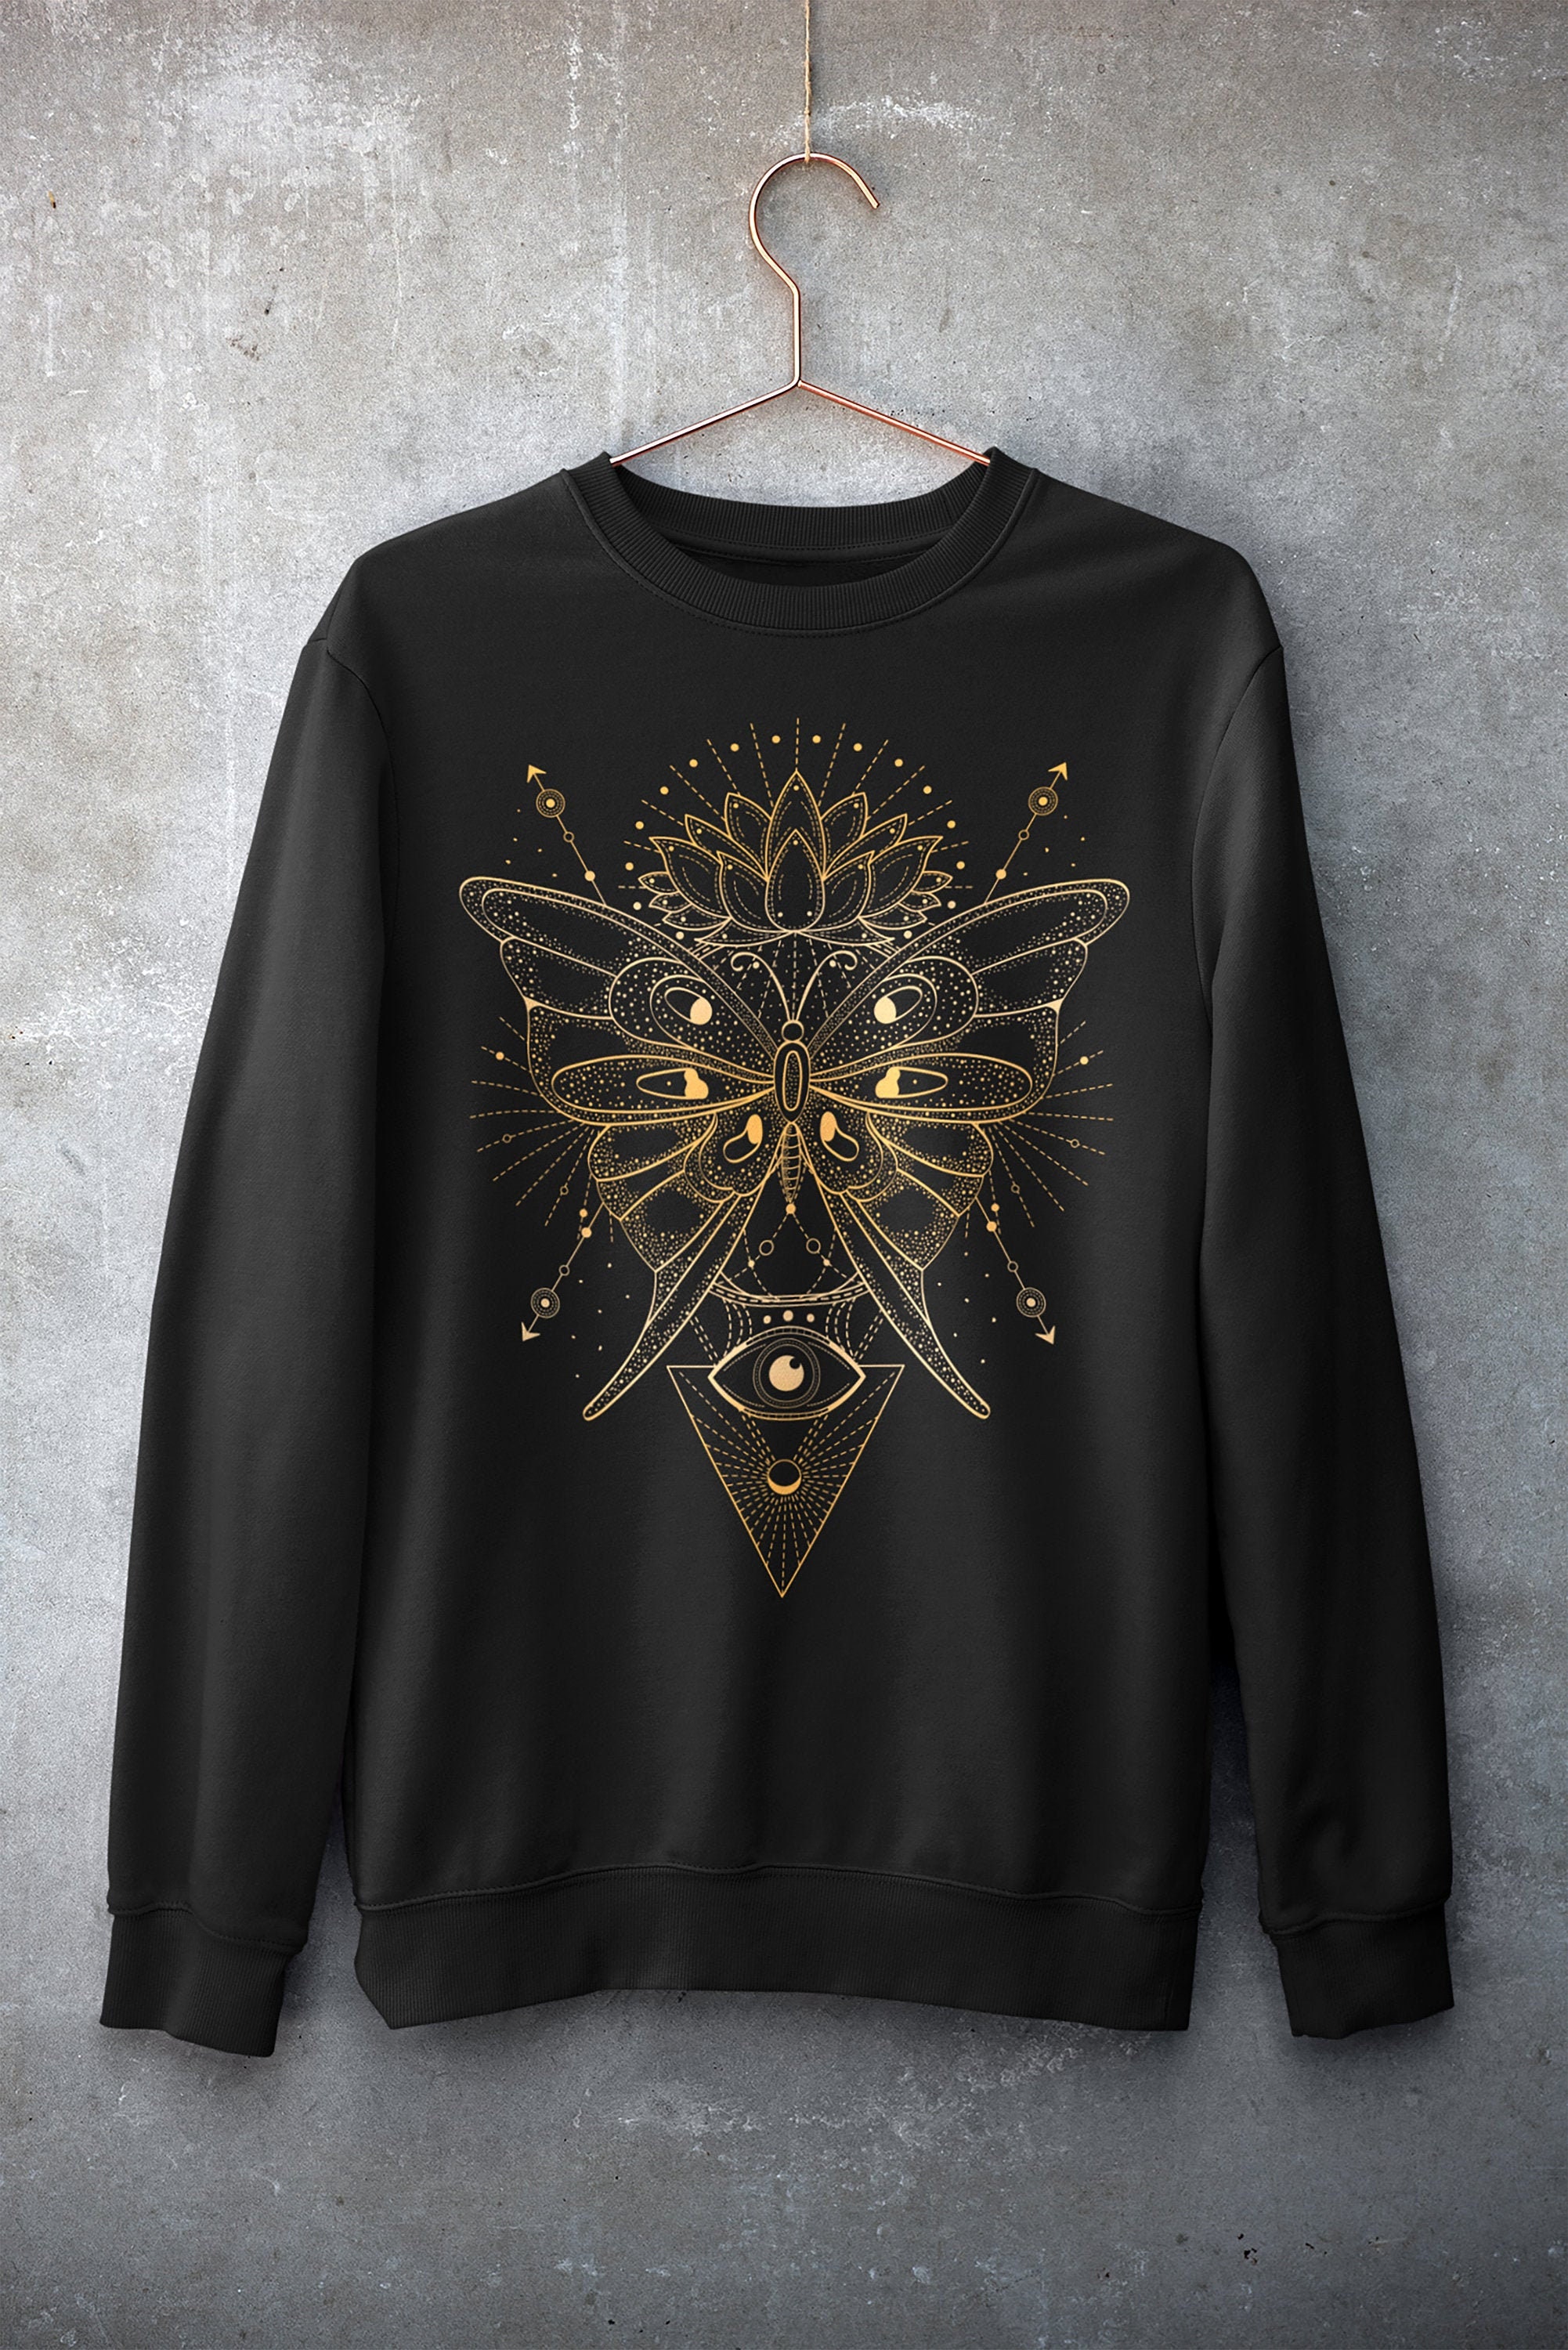 Butterfly | Heavy Blend Crewneck Sweatshirt/Hoodie Sacred Geometry Lotus Flower All Seeing Eye Spirituality Spirit Animal